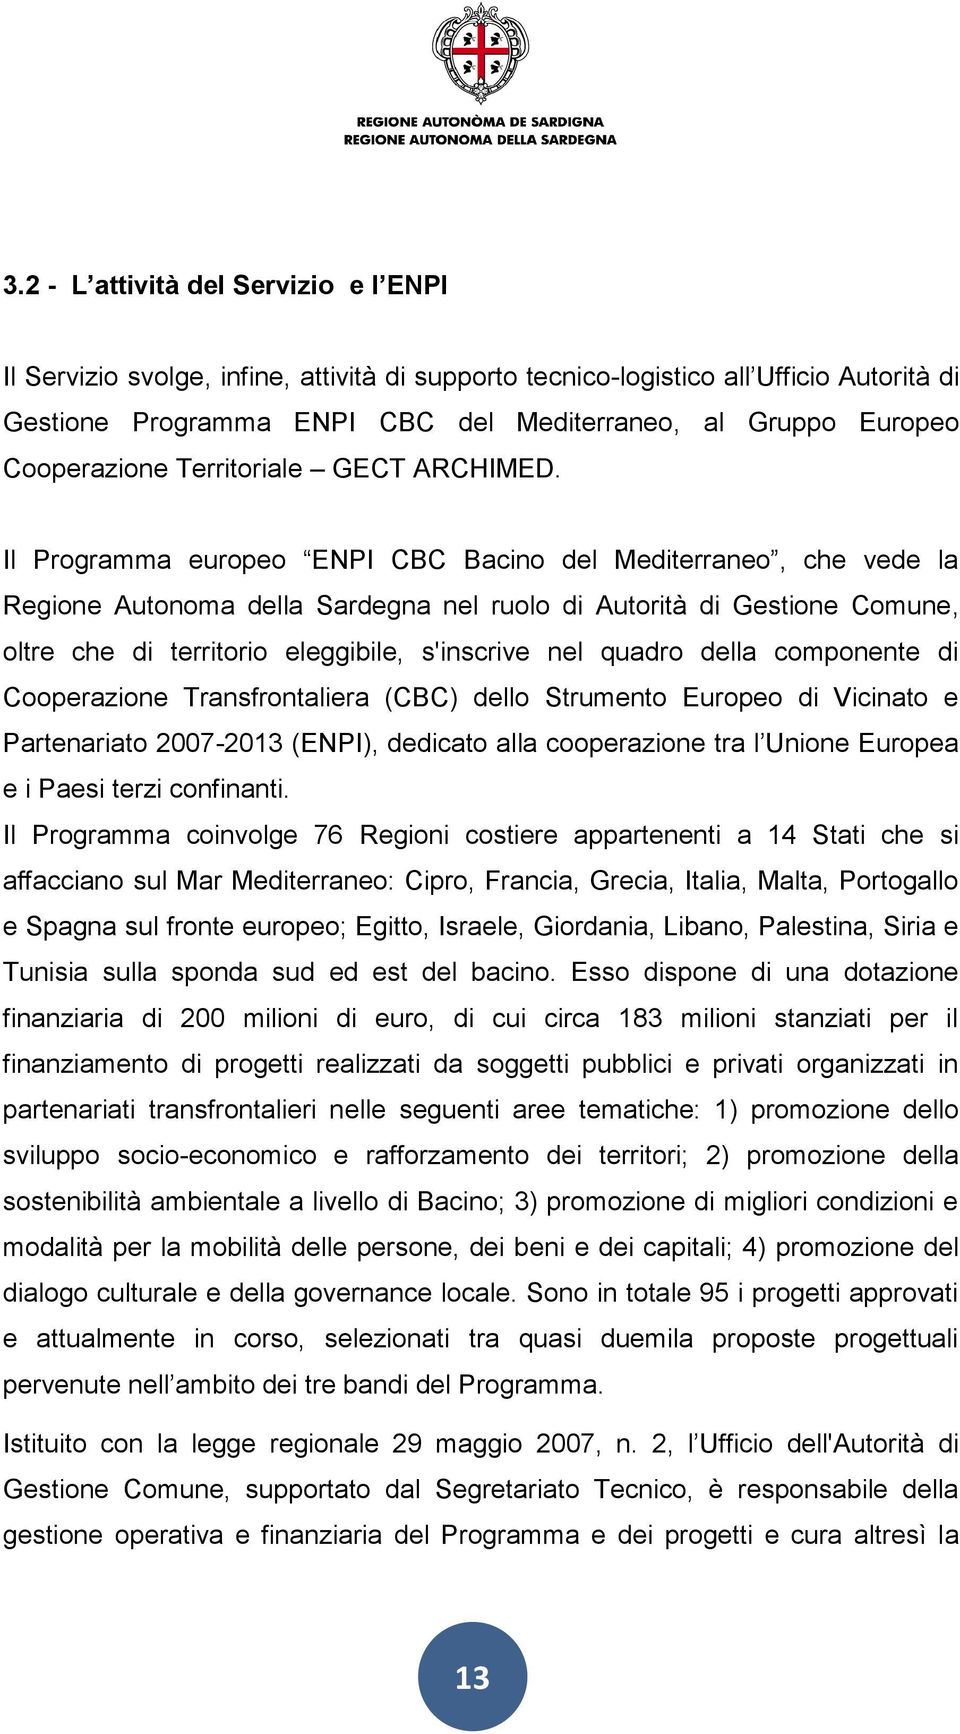 Il Programma europeo ENPI CBC Bacino del Mediterraneo, che vede la Regione Autonoma della Sardegna nel ruolo di Autorità di Gestione Comune, oltre che di territorio eleggibile, s'inscrive nel quadro